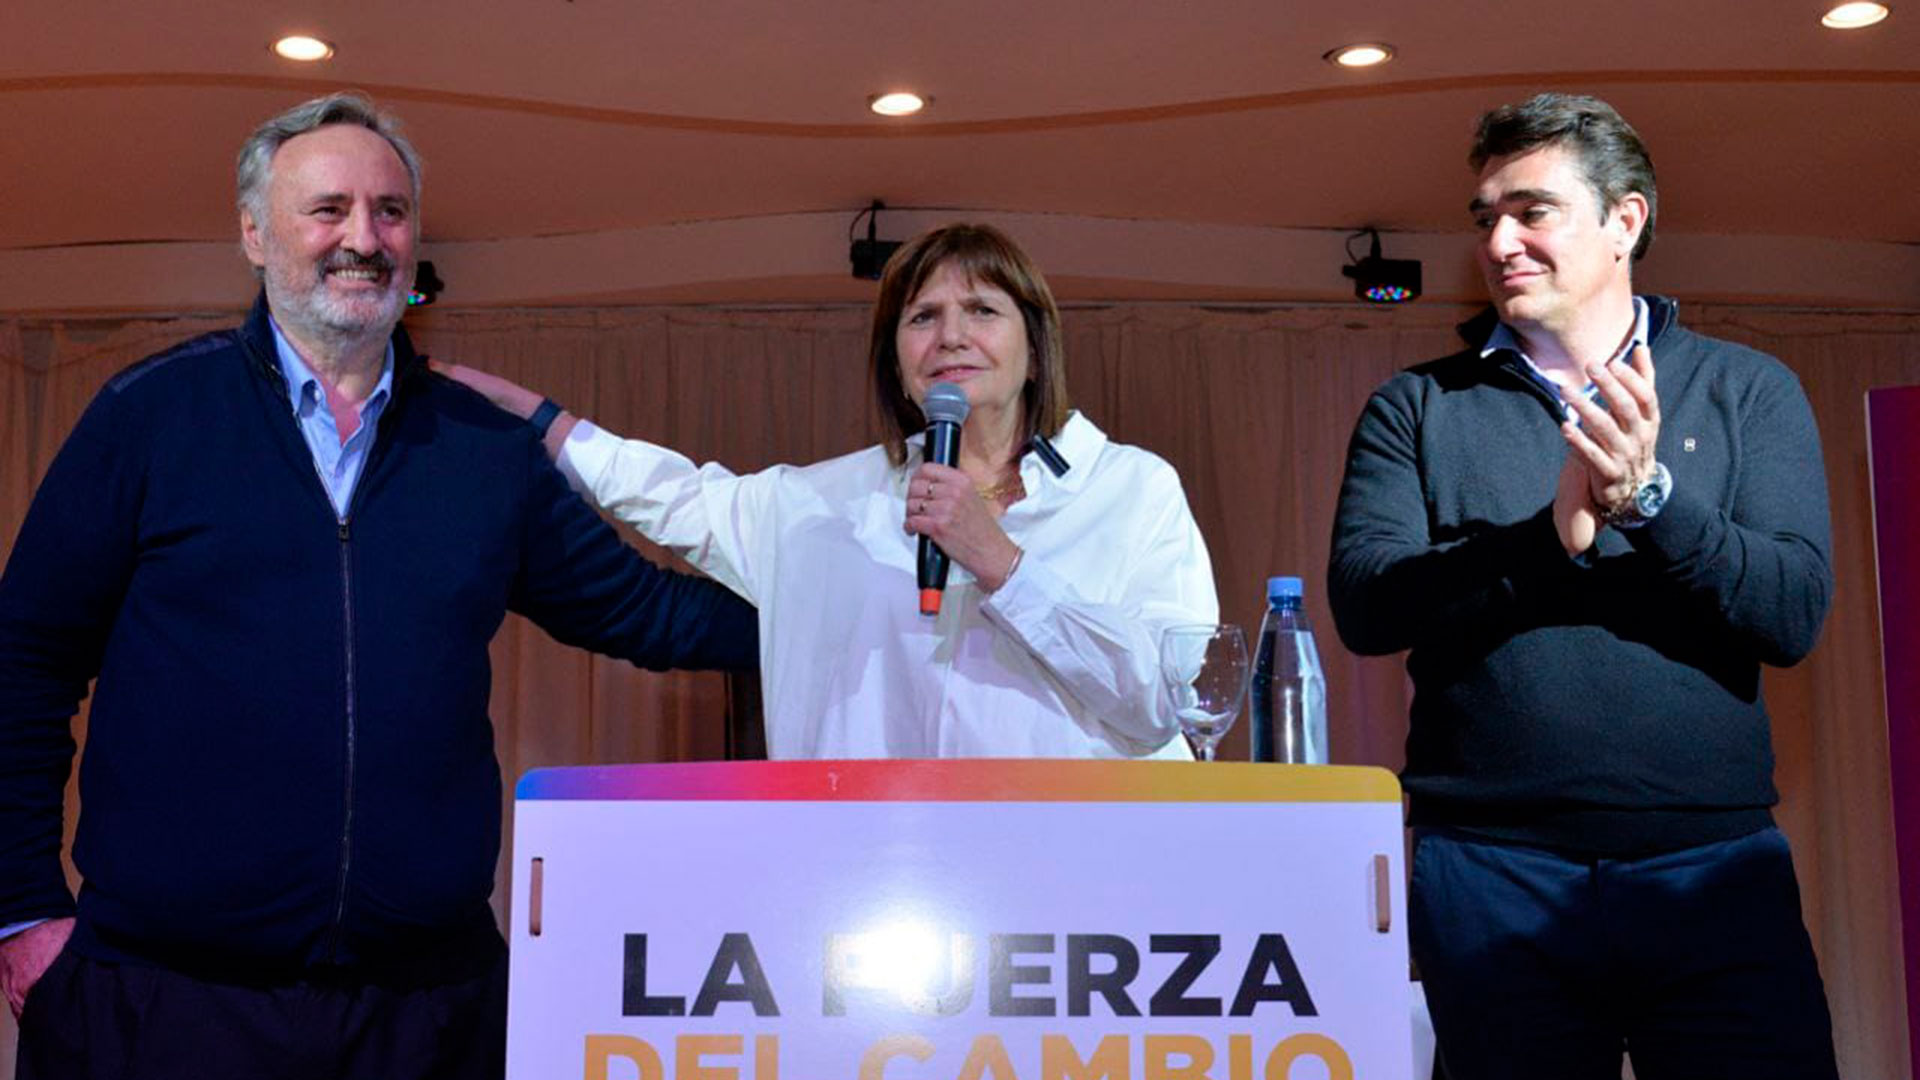 Patricia Bullrich incorporó al peronista De la Torre, su nuevo candidato a gobernador bonaerense, con críticas a Diego Santilli